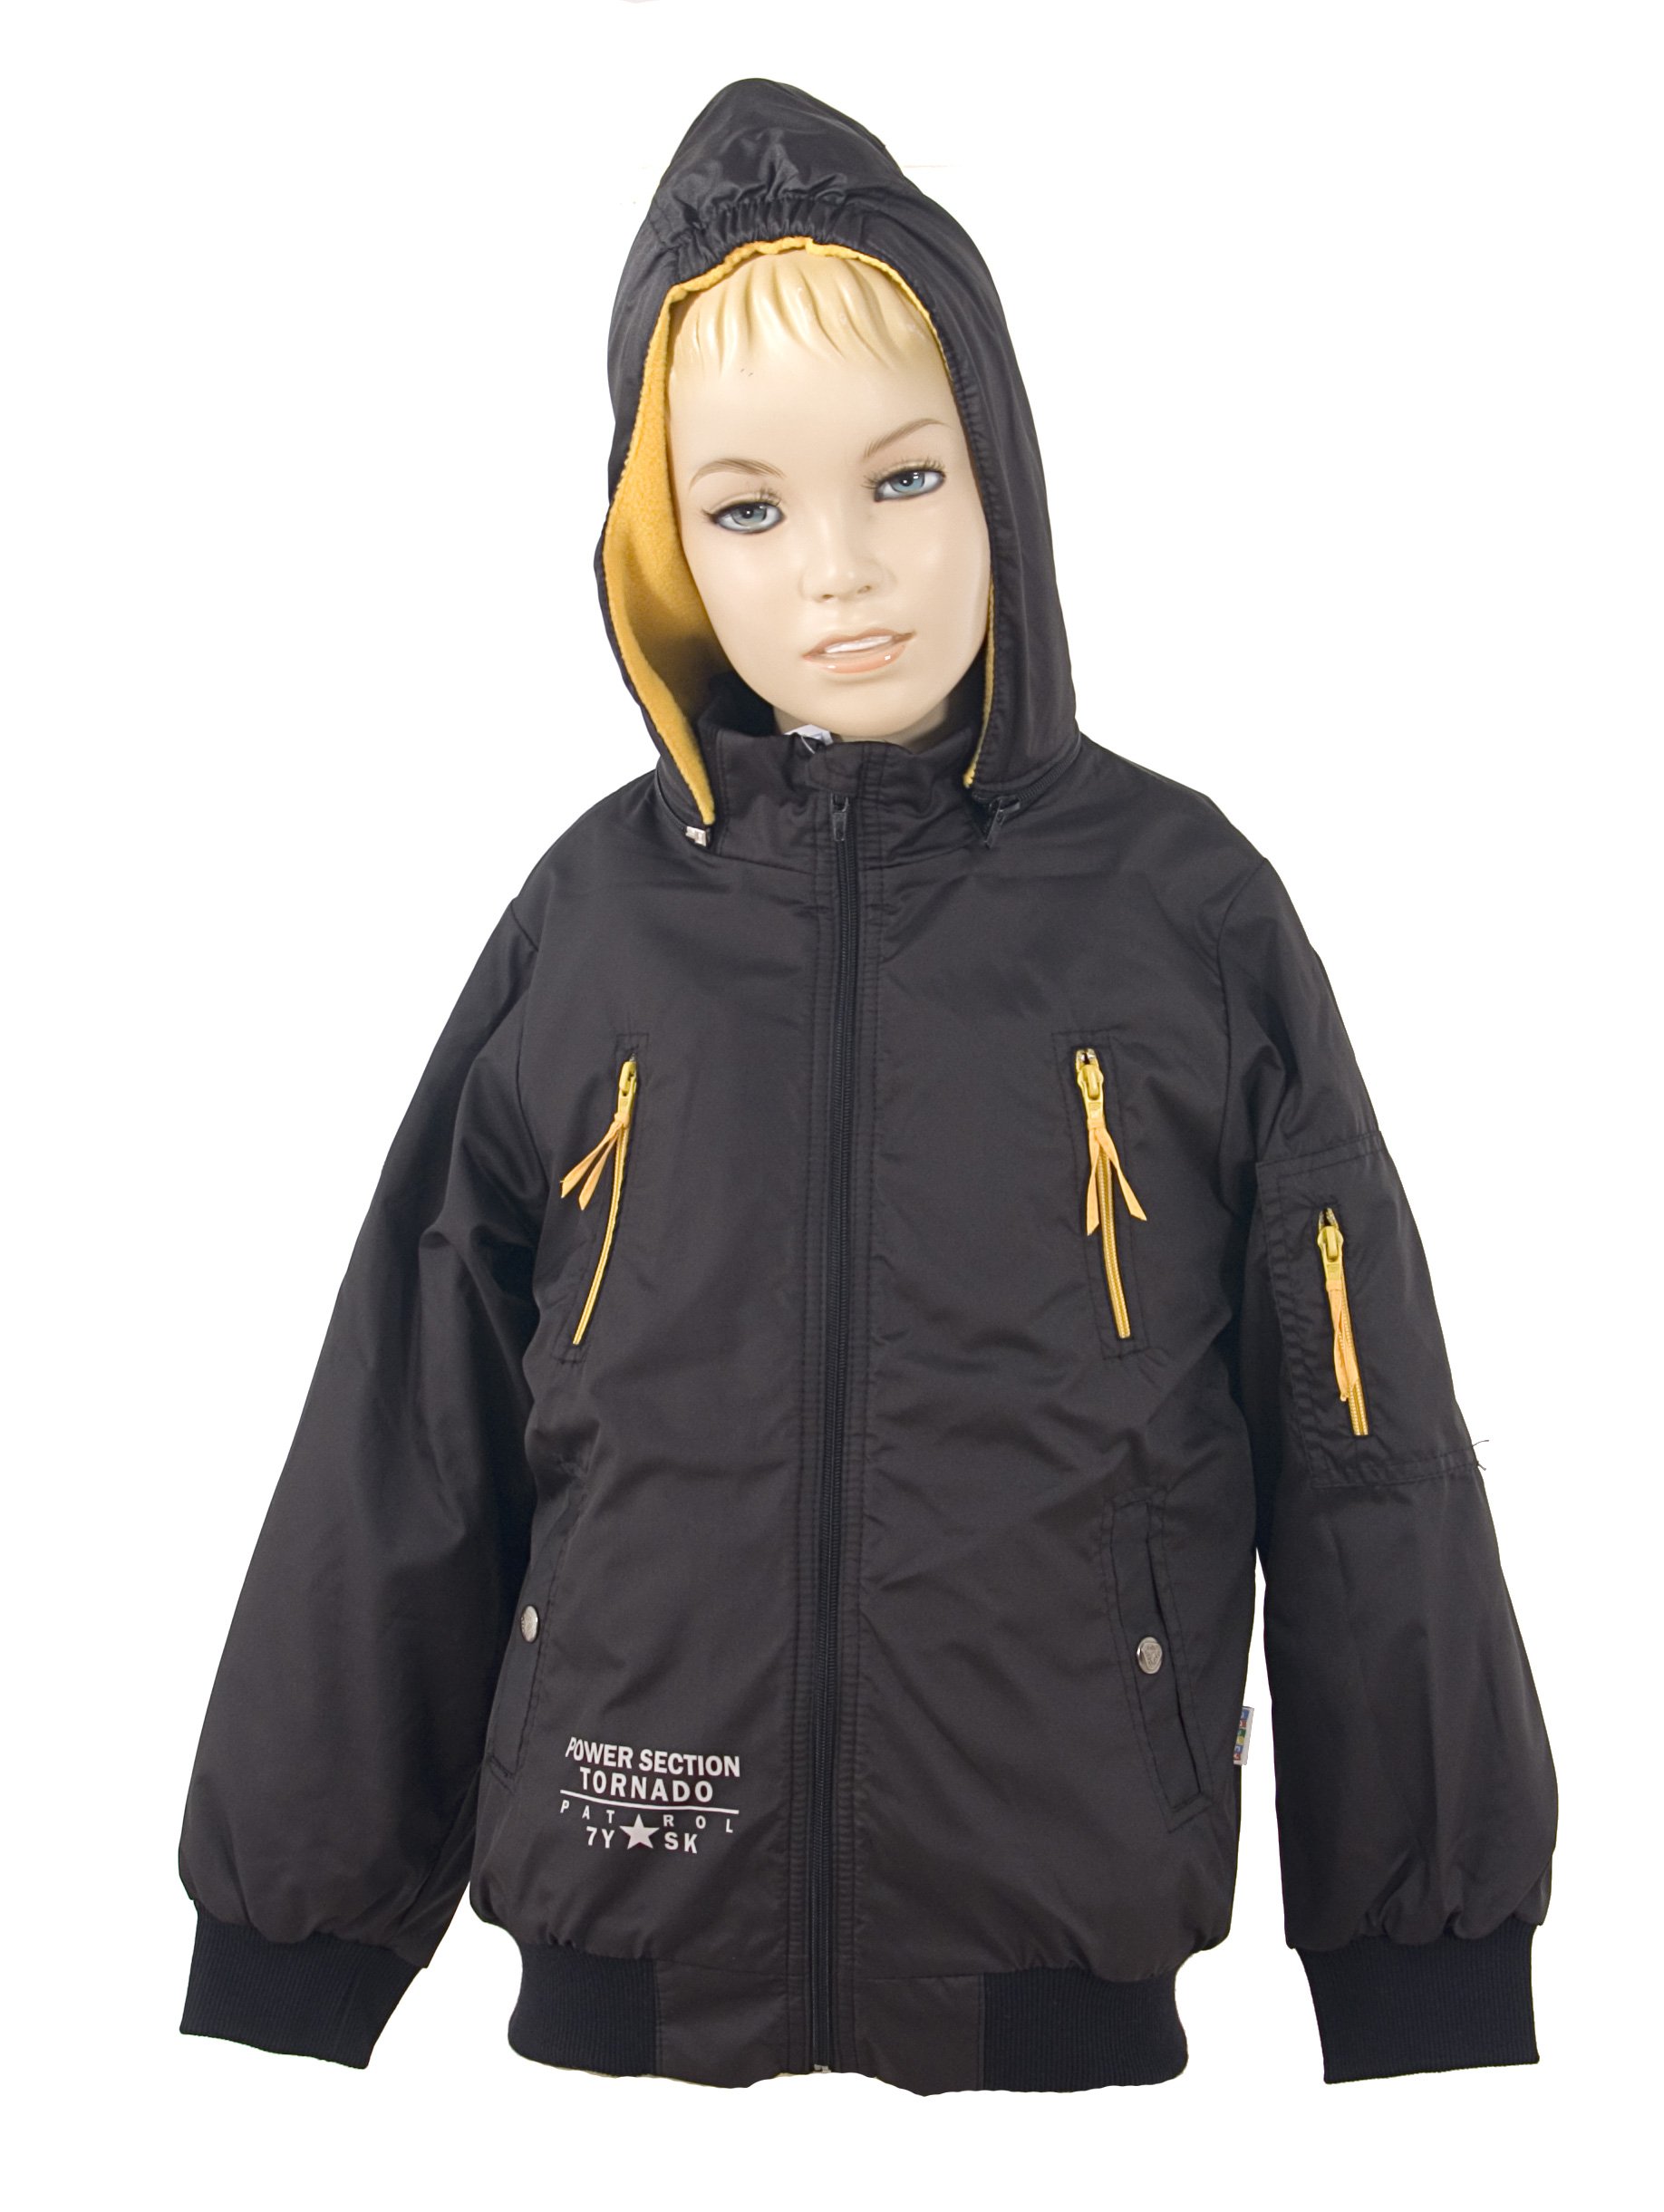 Zimní chlapecká bunda s kapucí podšitá fleece velikost 128-134 VÝPRODEJ